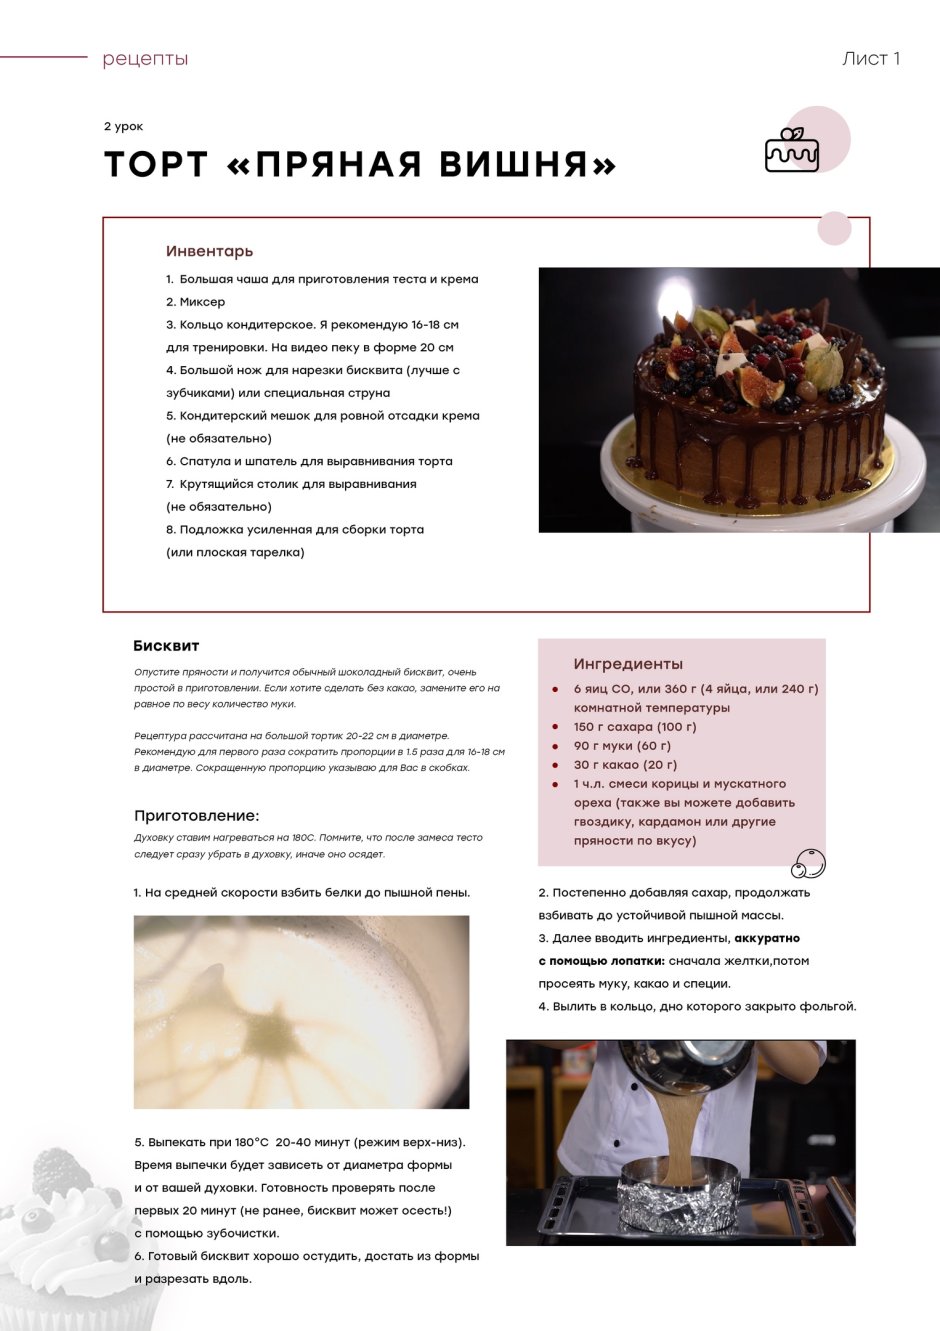 Украшение торта ягодами от Полины Филимоновой